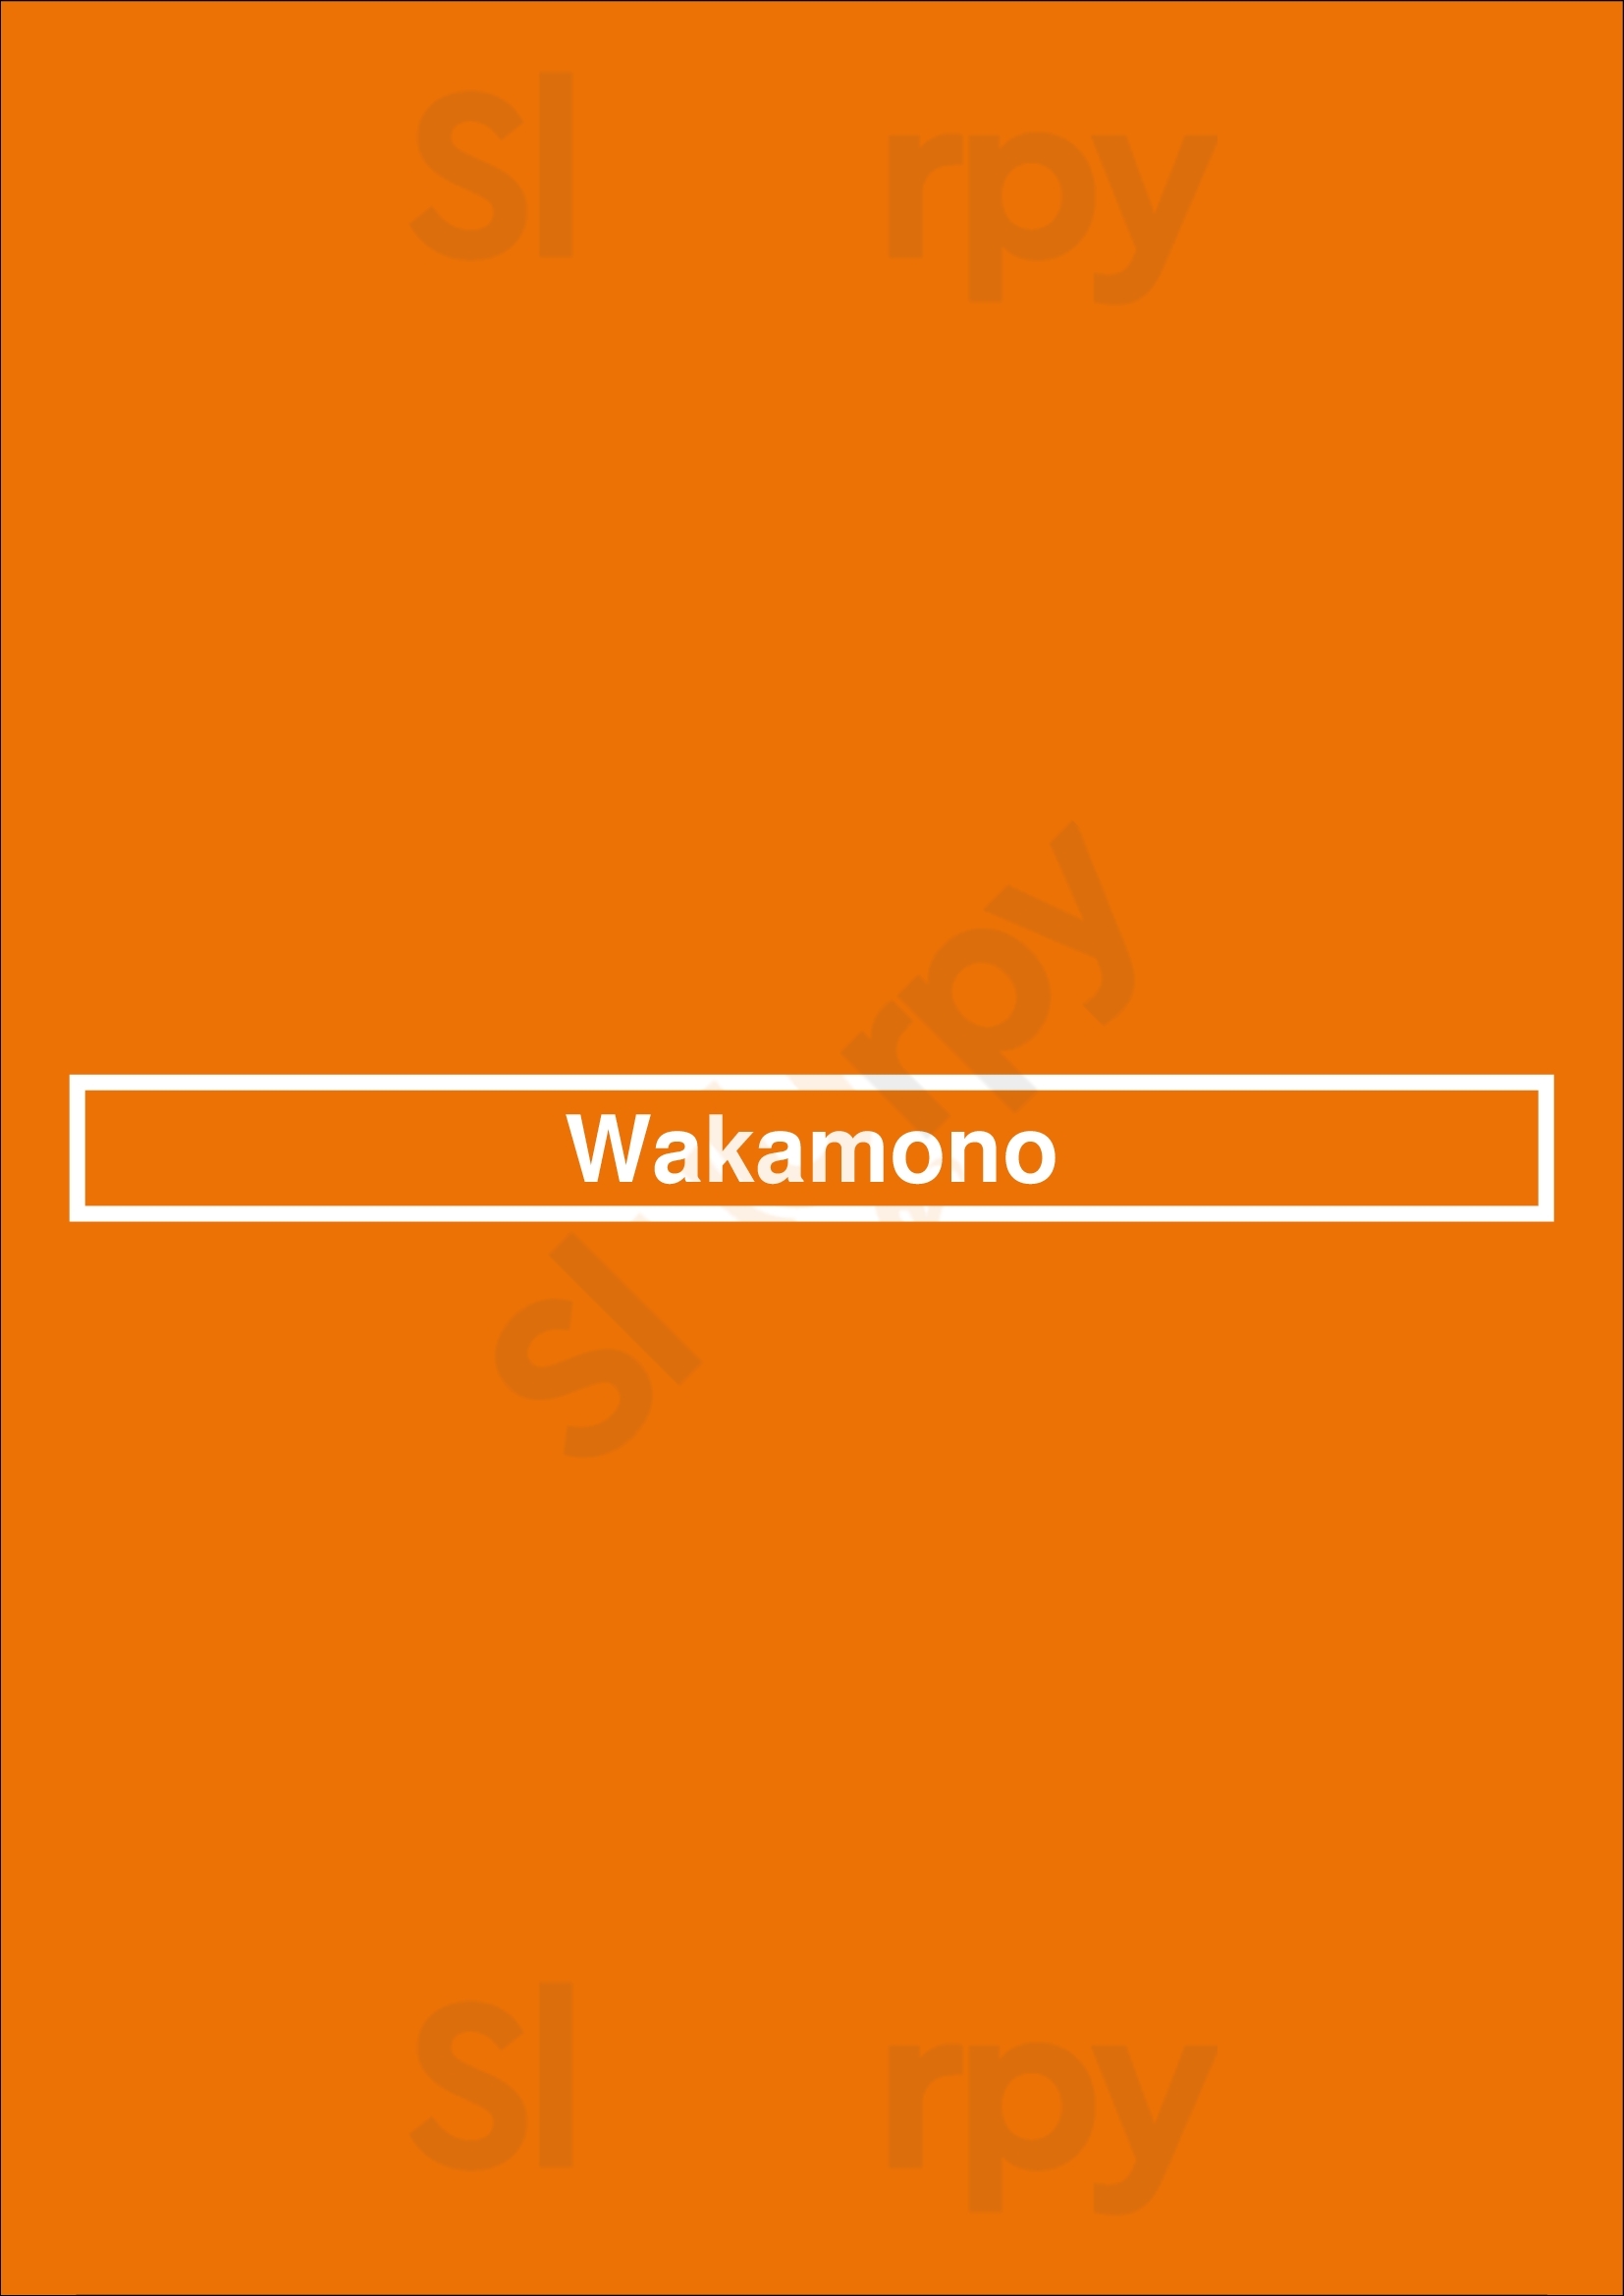 Wakamono Chicago Menu - 1